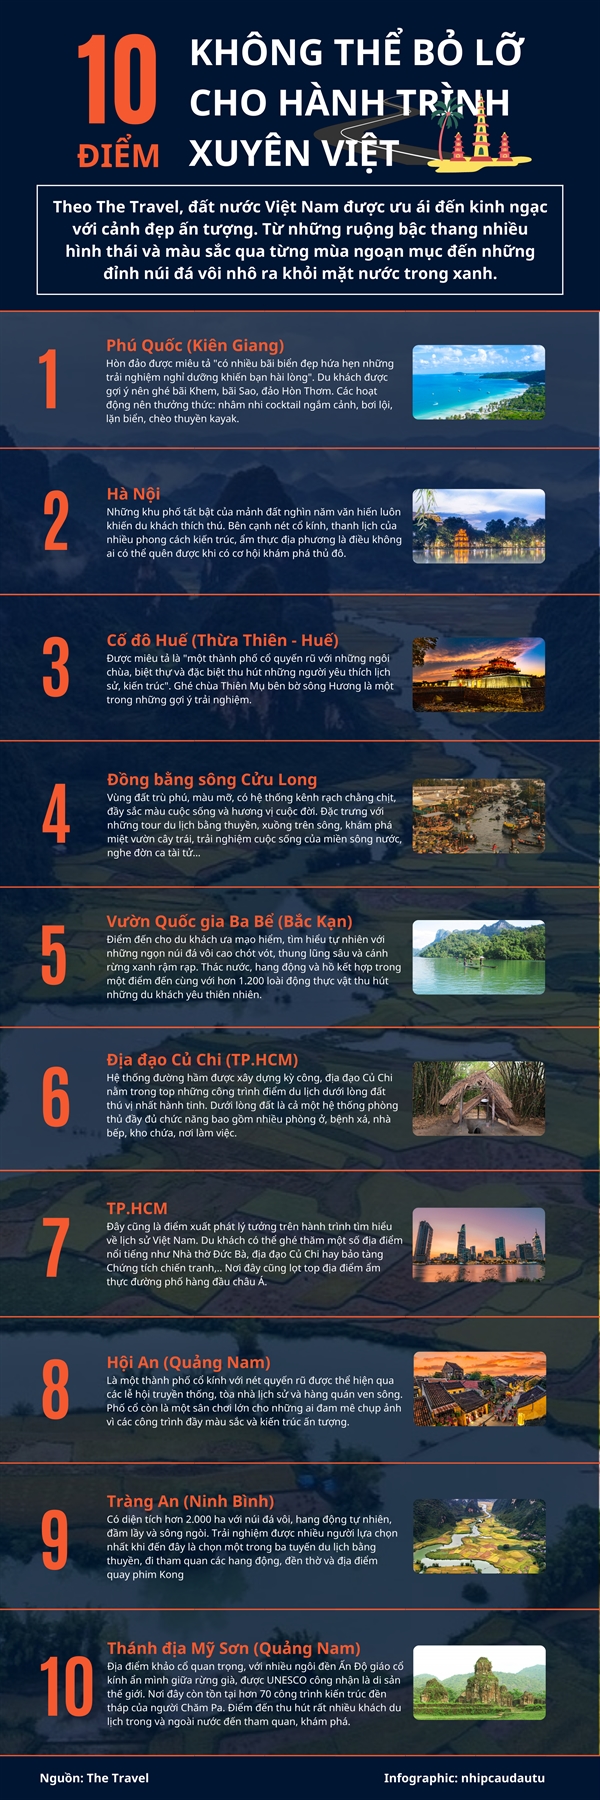 [Infographic] 10 diem khong the bo lo cho hanh trinh xuyen Viet